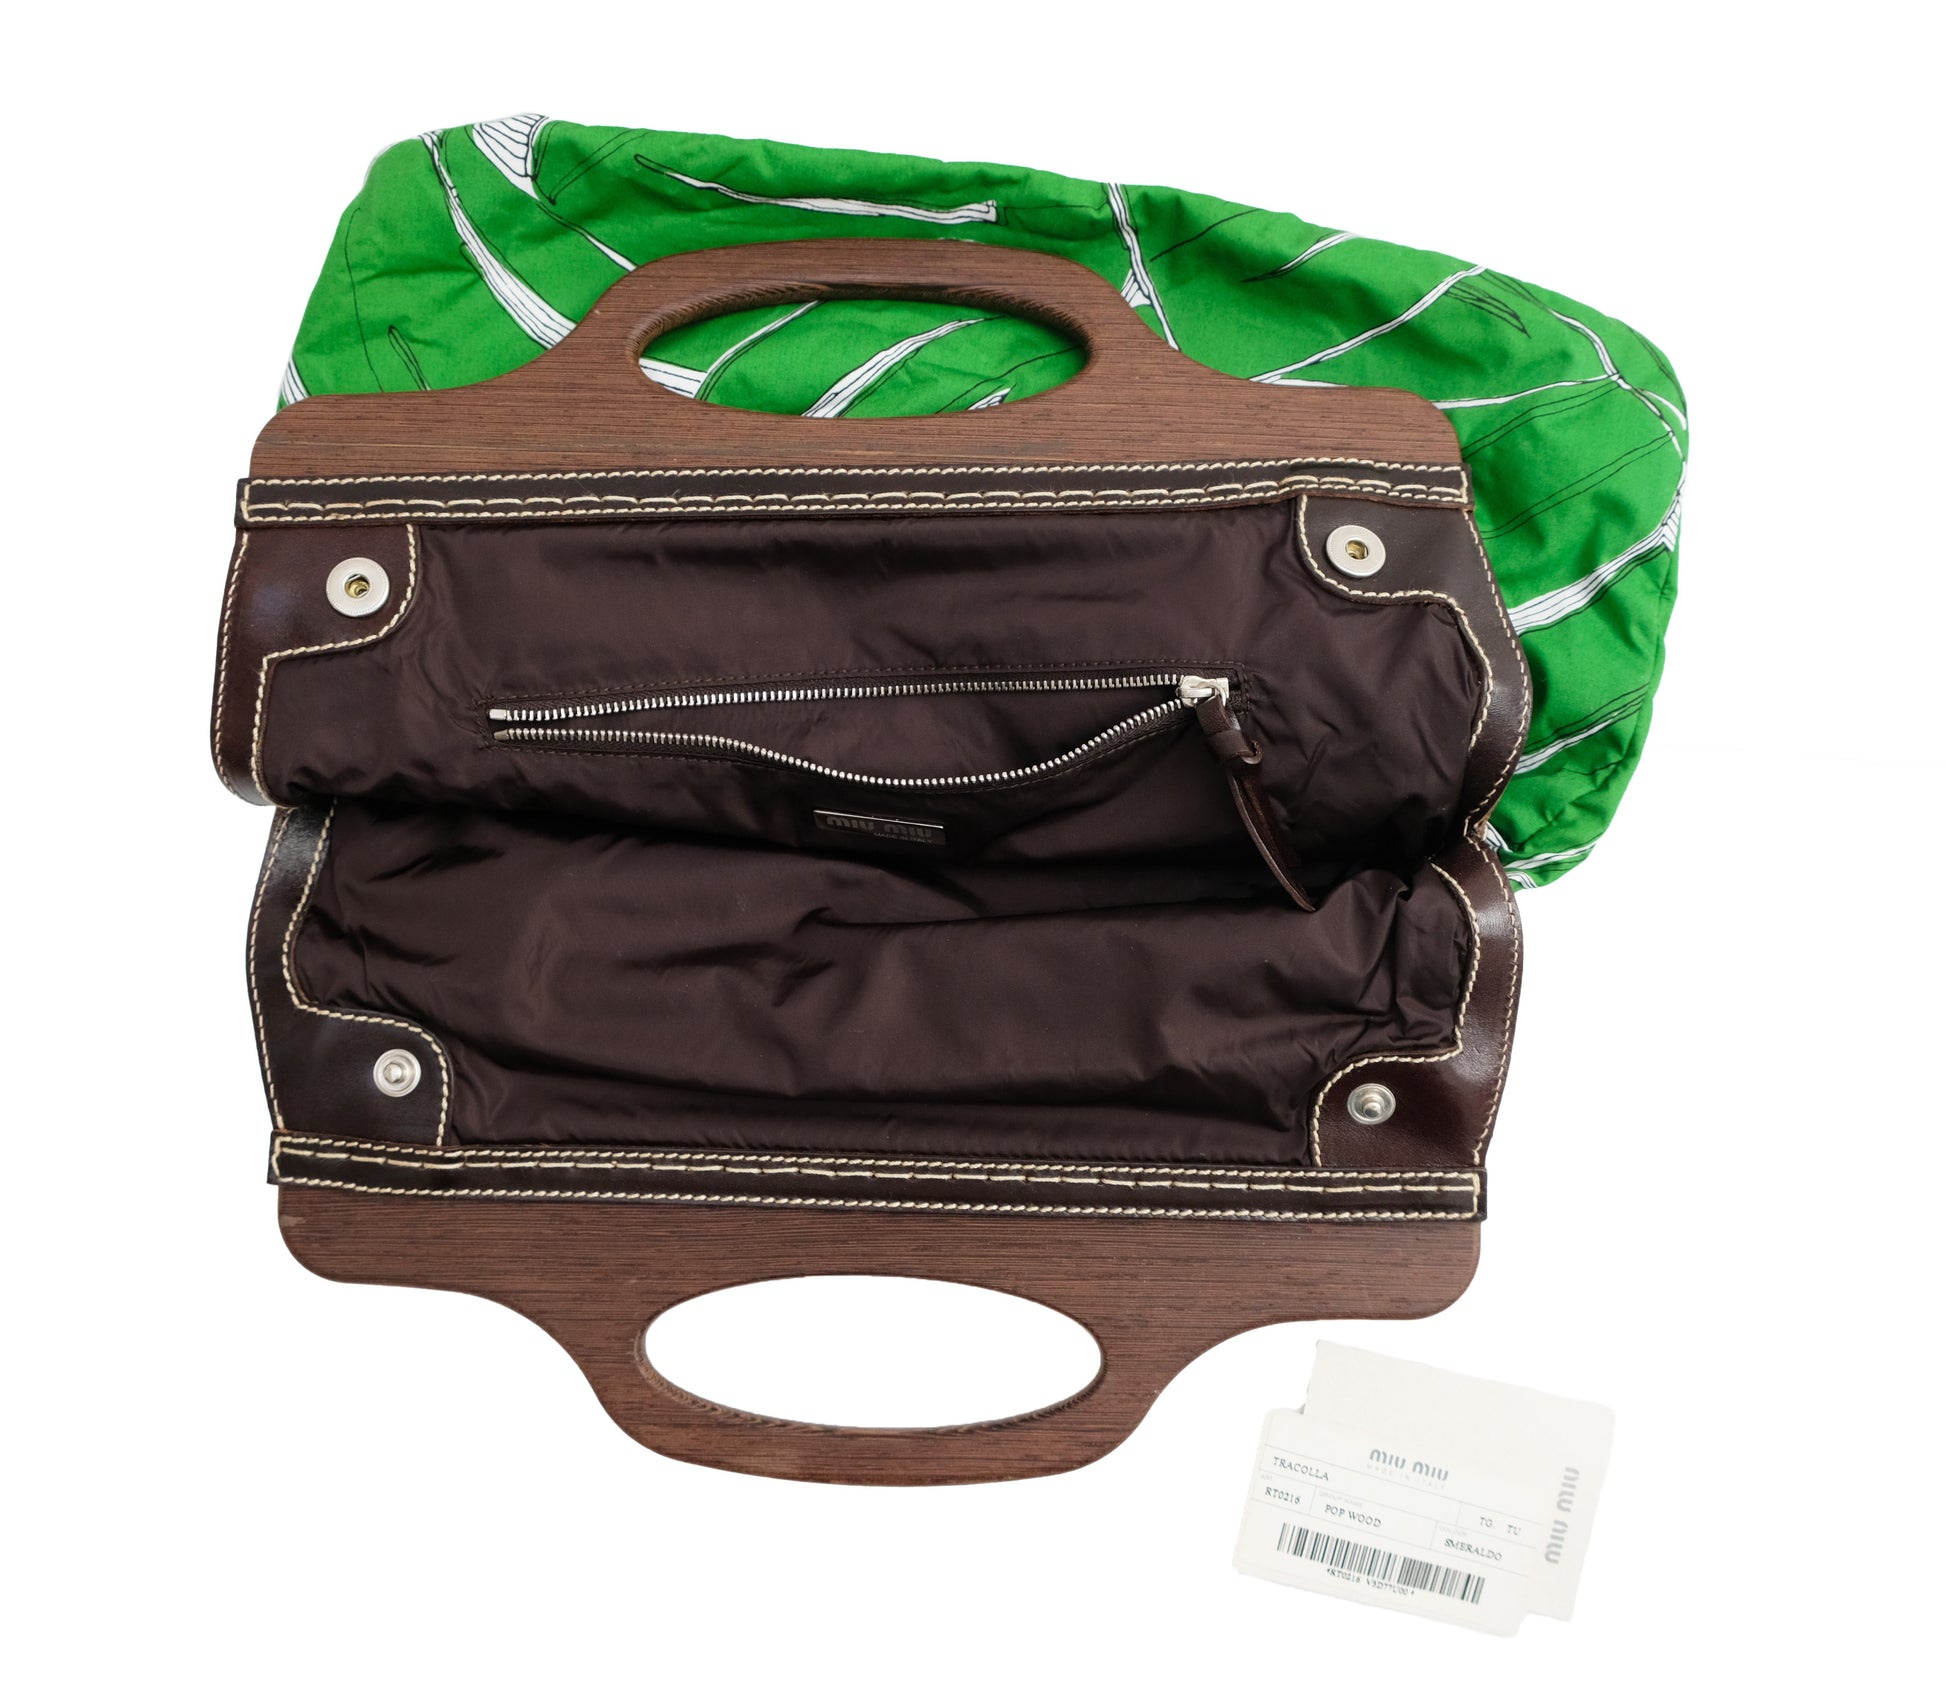 Miu Miu Tropical Leaf Print Cotton Handbag with Wooden Handles